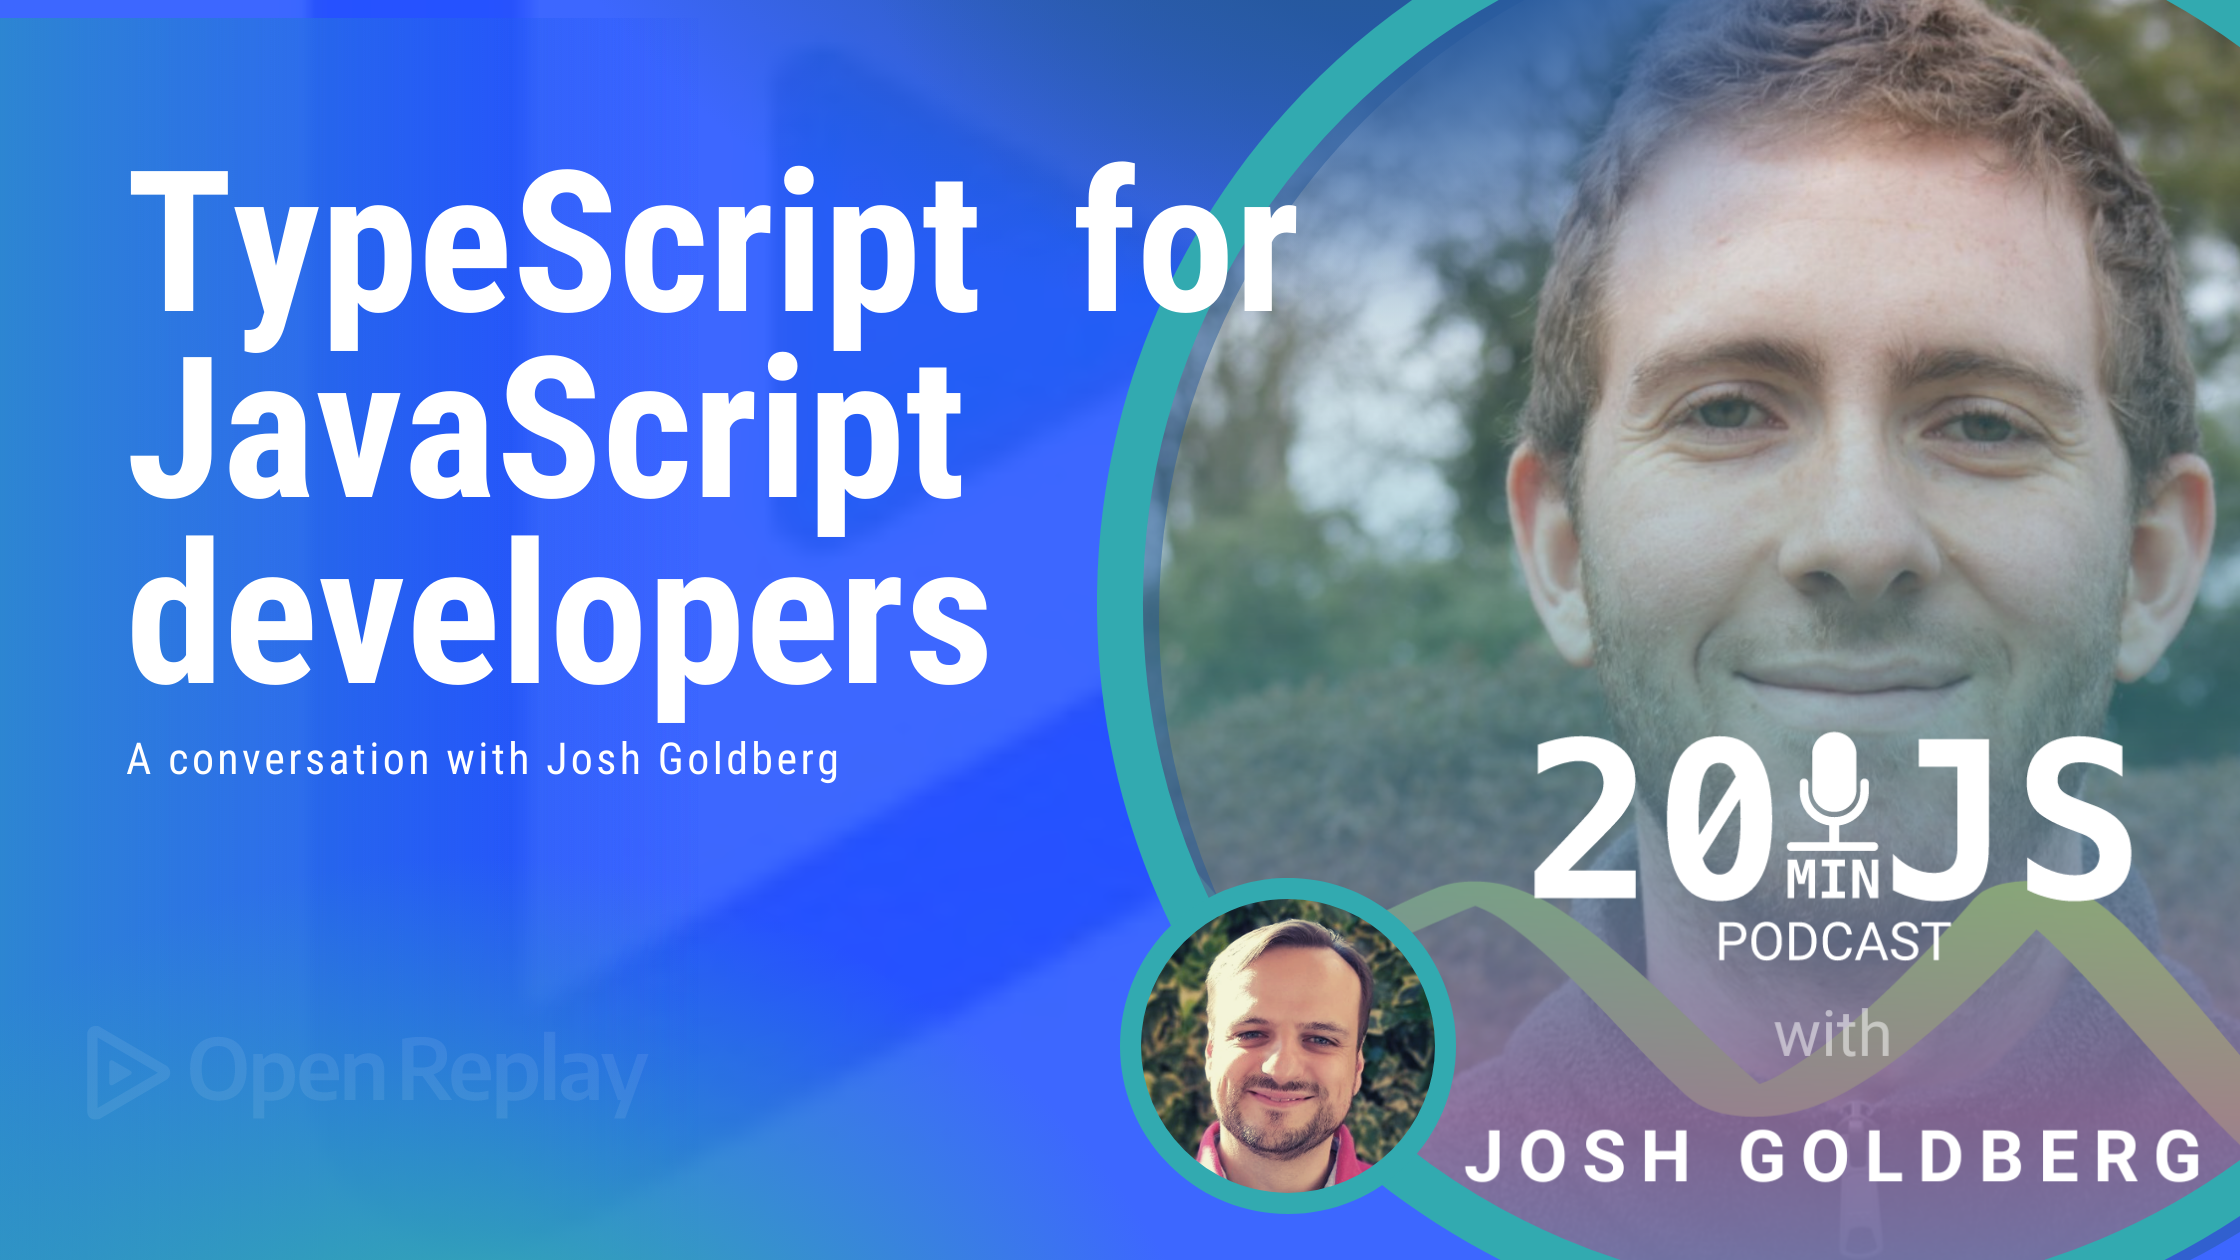 TypeScript for JavaScript developers